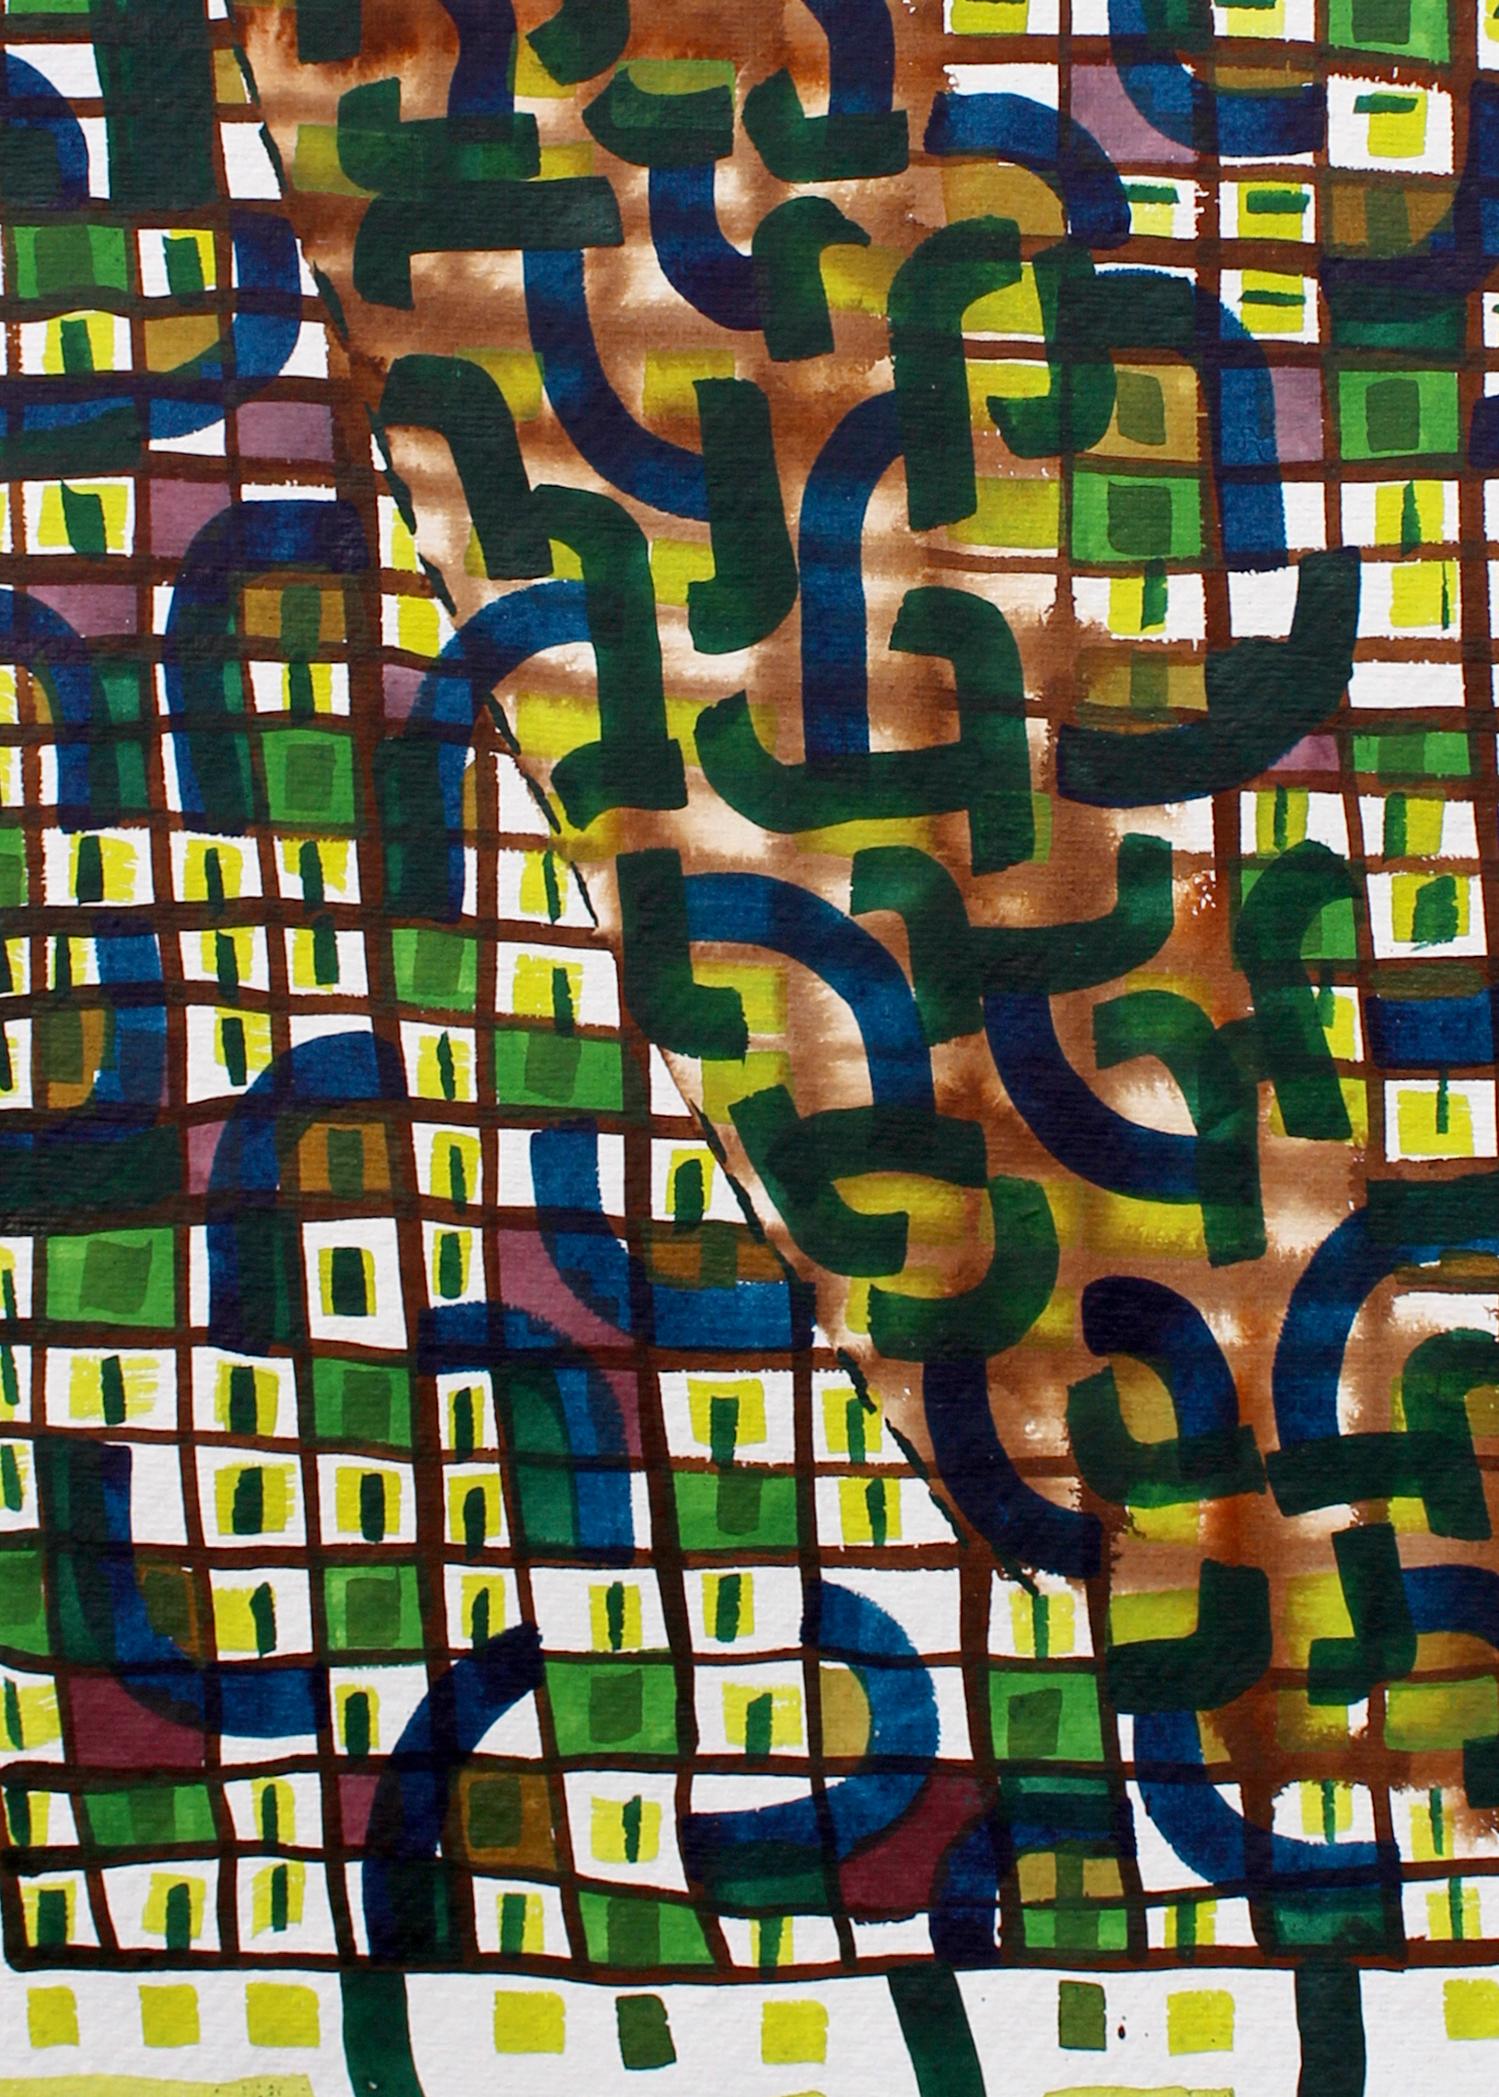 Grüne Blöcke, 2017. Tusche und Acryl auf Papier.

Nicky Marais ist ein namibischer Künstler, Pädagoge und Aktivist, der in Windhoek lebt und arbeitet. Marais ist bekannt für ihre abstrakten Kunstwerke, die ein persönliches Vokabular aus abstrakten